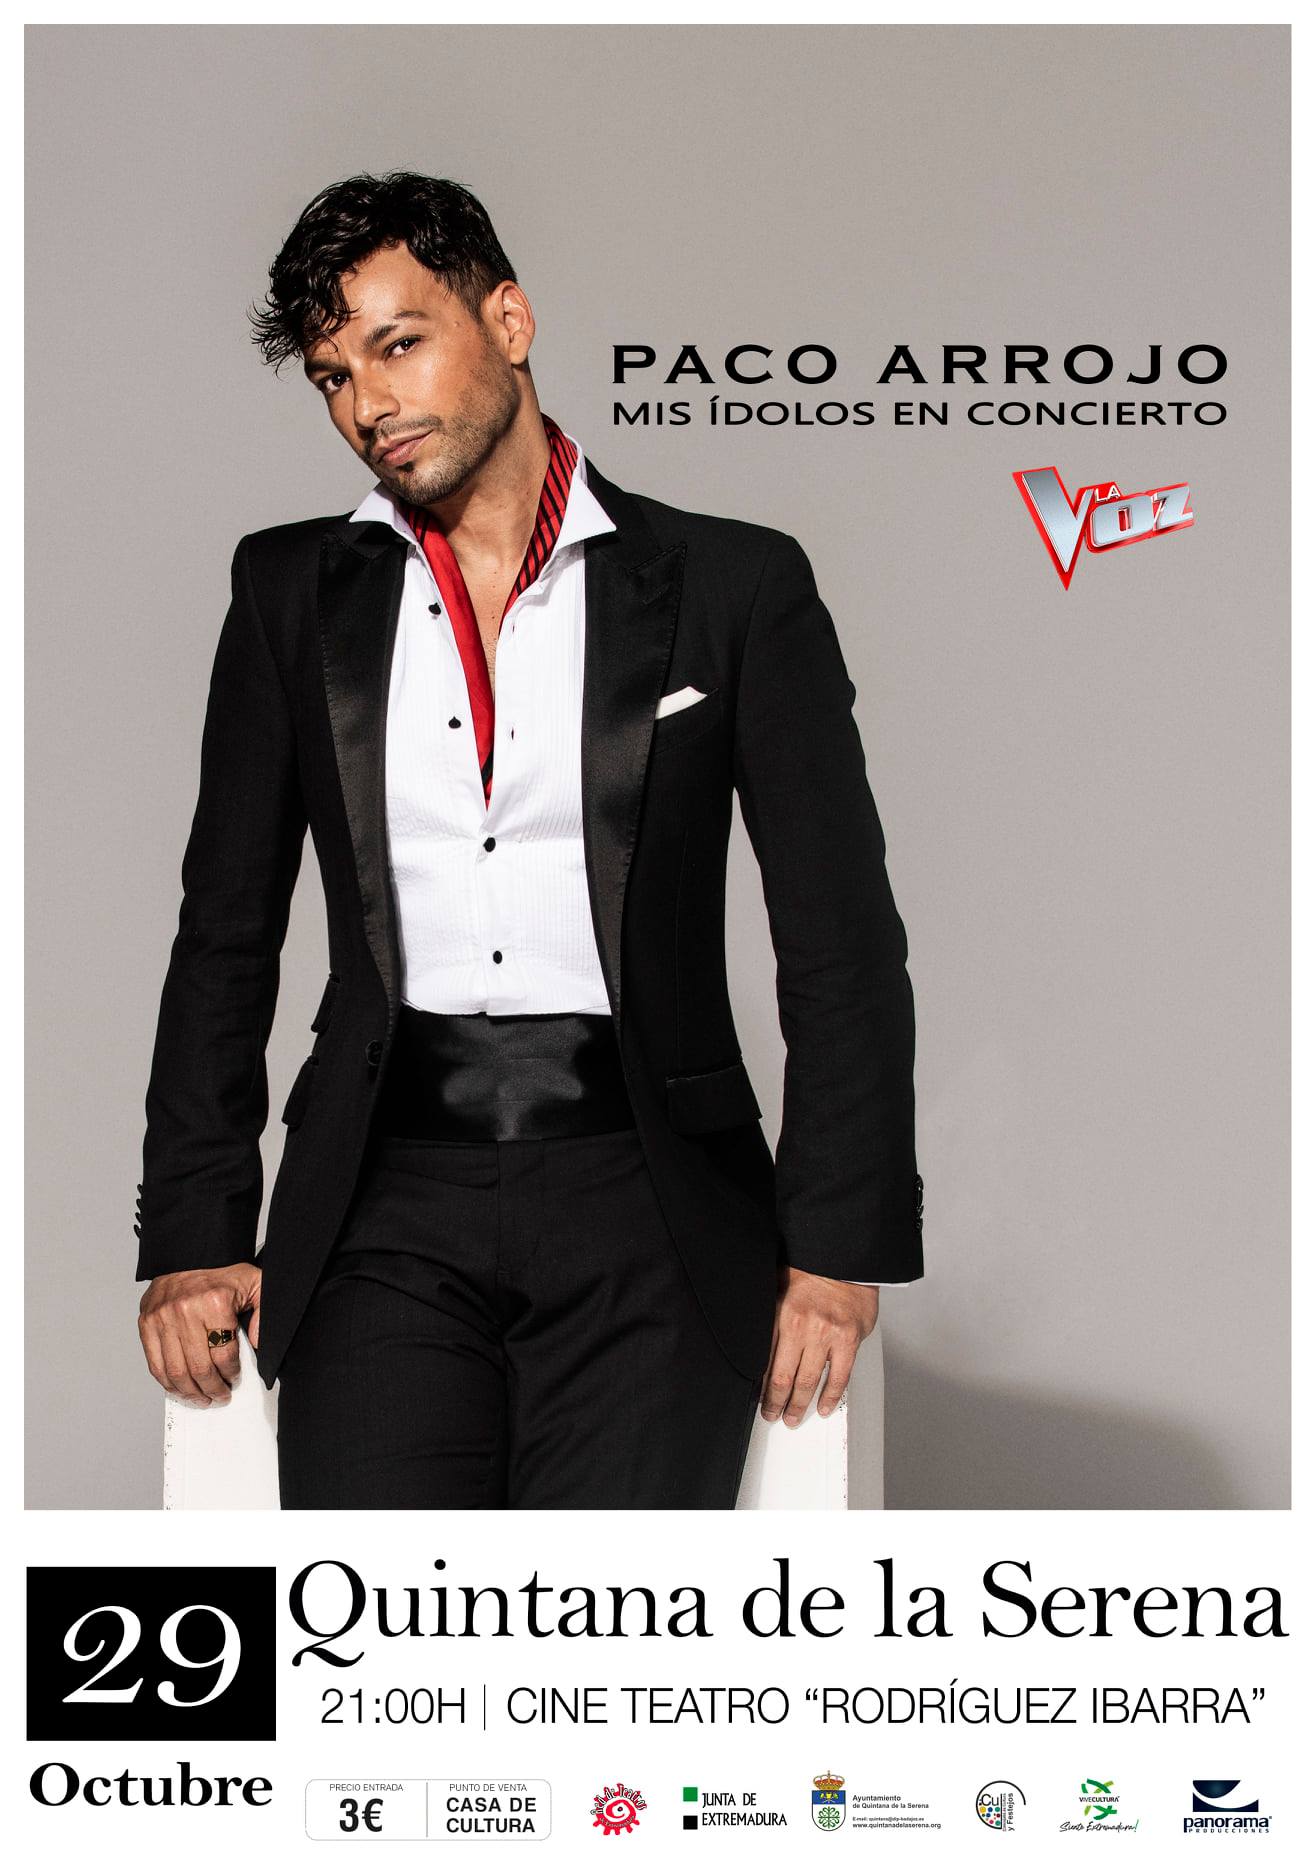 El cantante de la Voz, Paco Arrojo, actuará el 29 de octubre en el Rodríguez Ibarra